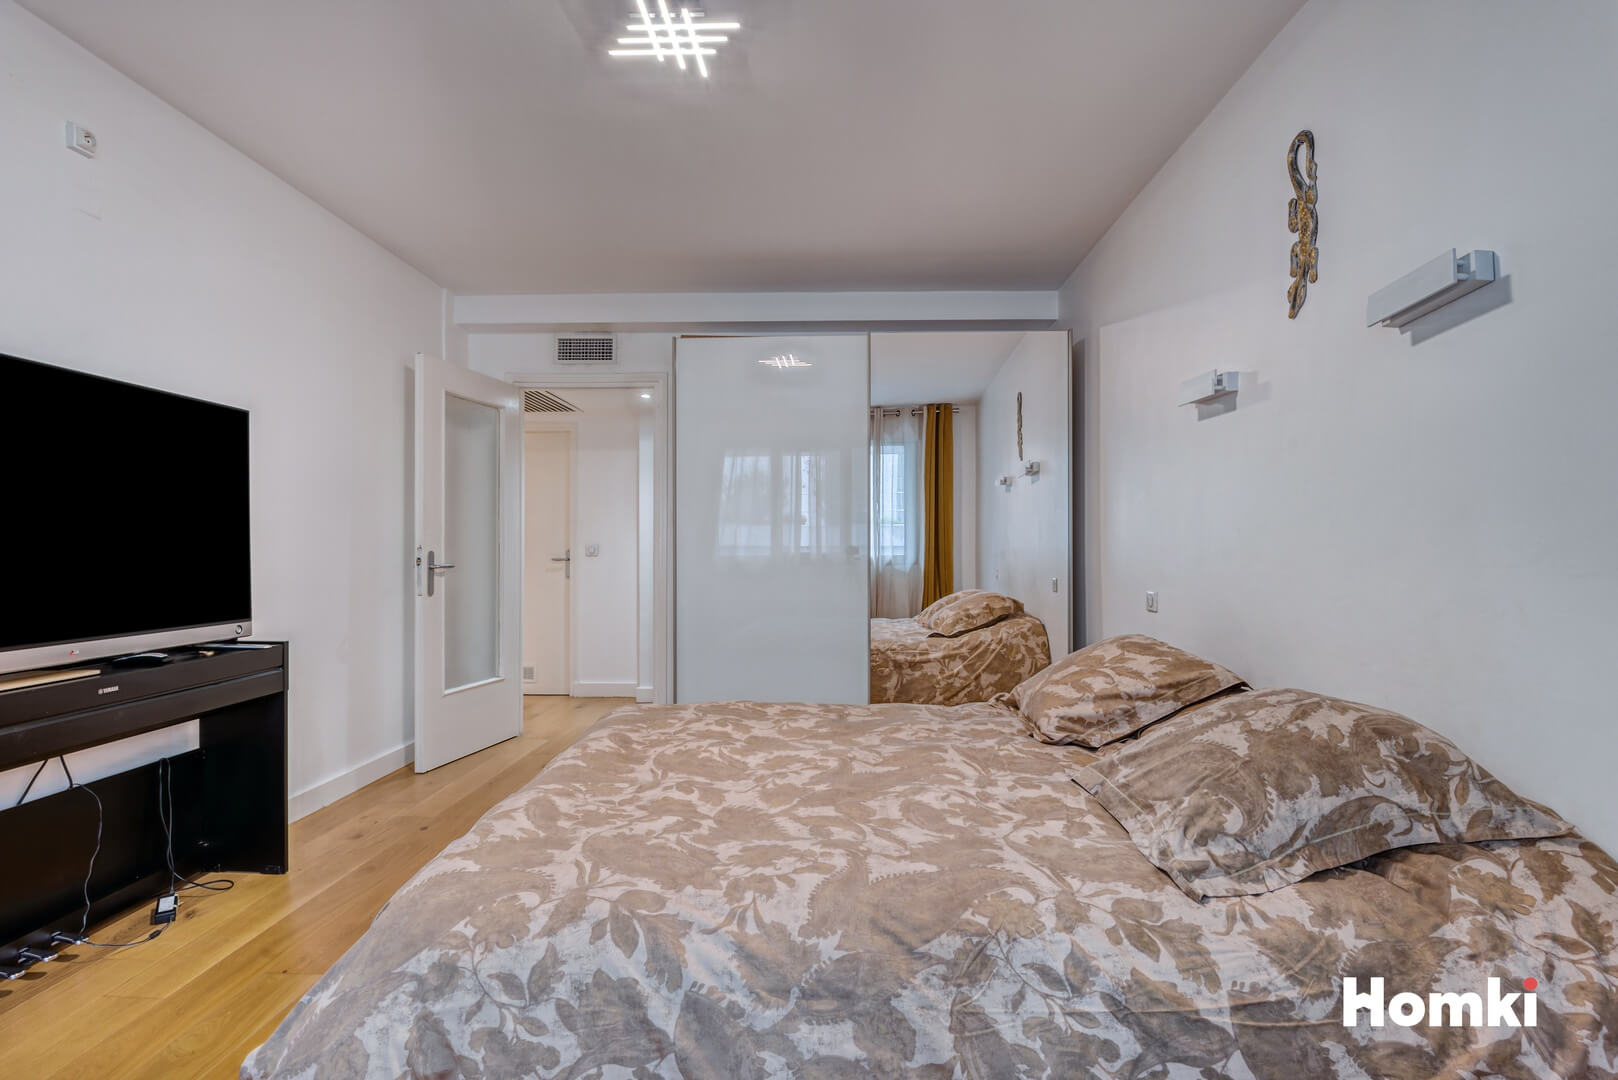 Homki - Vente Appartement  de 111.0 m² à Marseille 13001